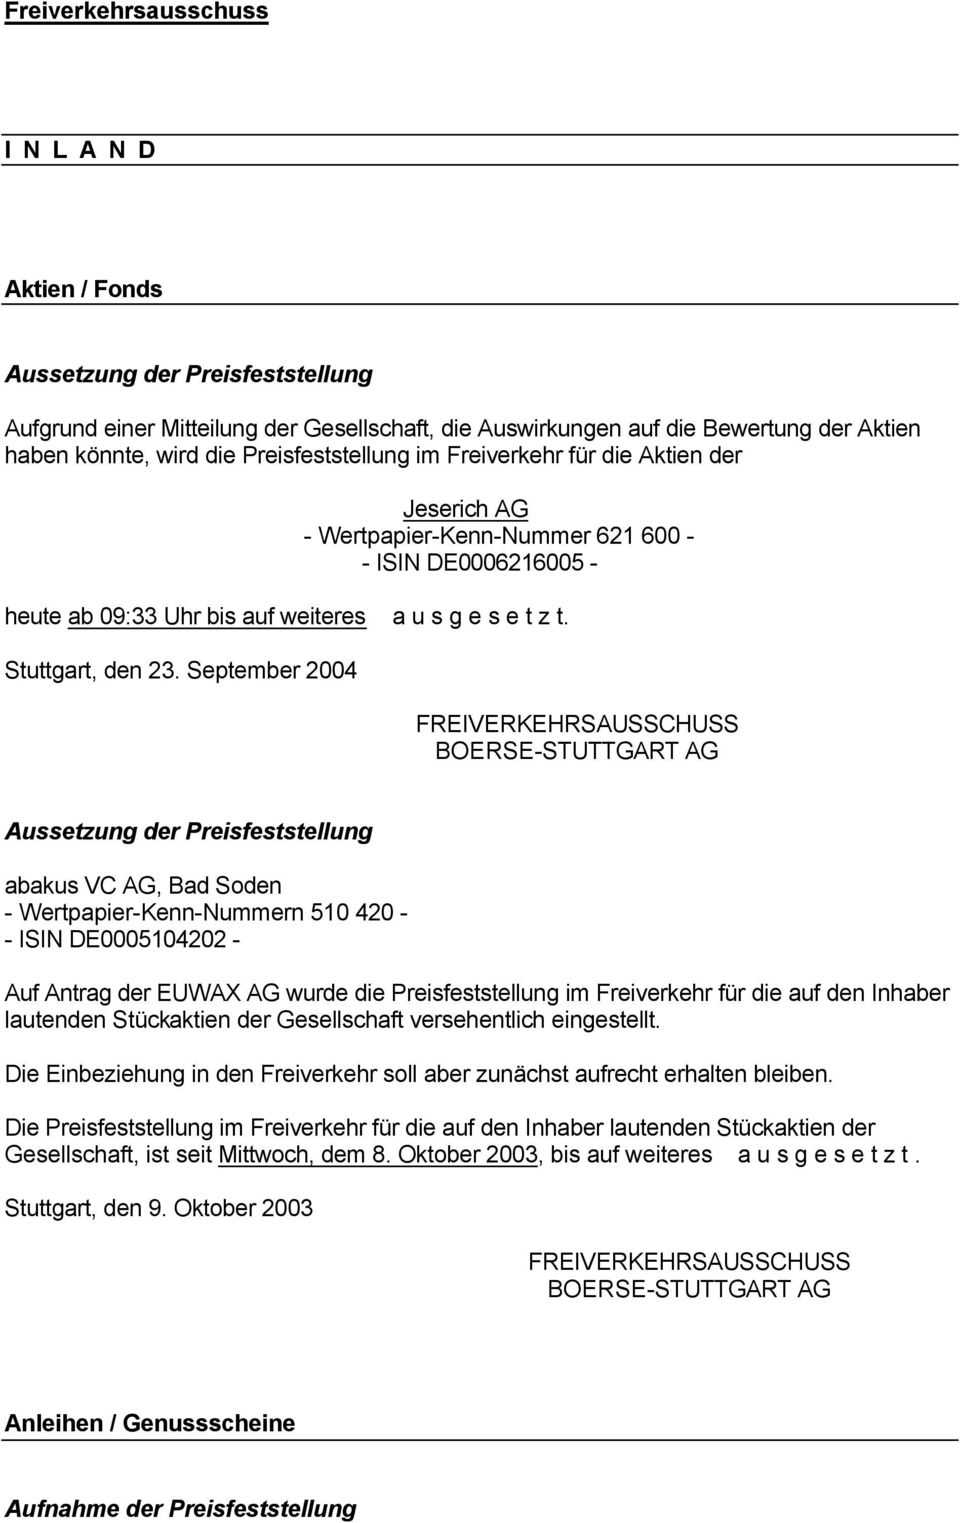 September 2004 FREIVERKEHRSAUSSCHUSS Aussetzung Preisfeststellung abakus VC AG, Bad Soden - Wertpapier-Kenn-Nummern 510 420 - - ISIN DE0005104202 - Auf Antrag EUWAX AG wurde die Preisfeststellung im